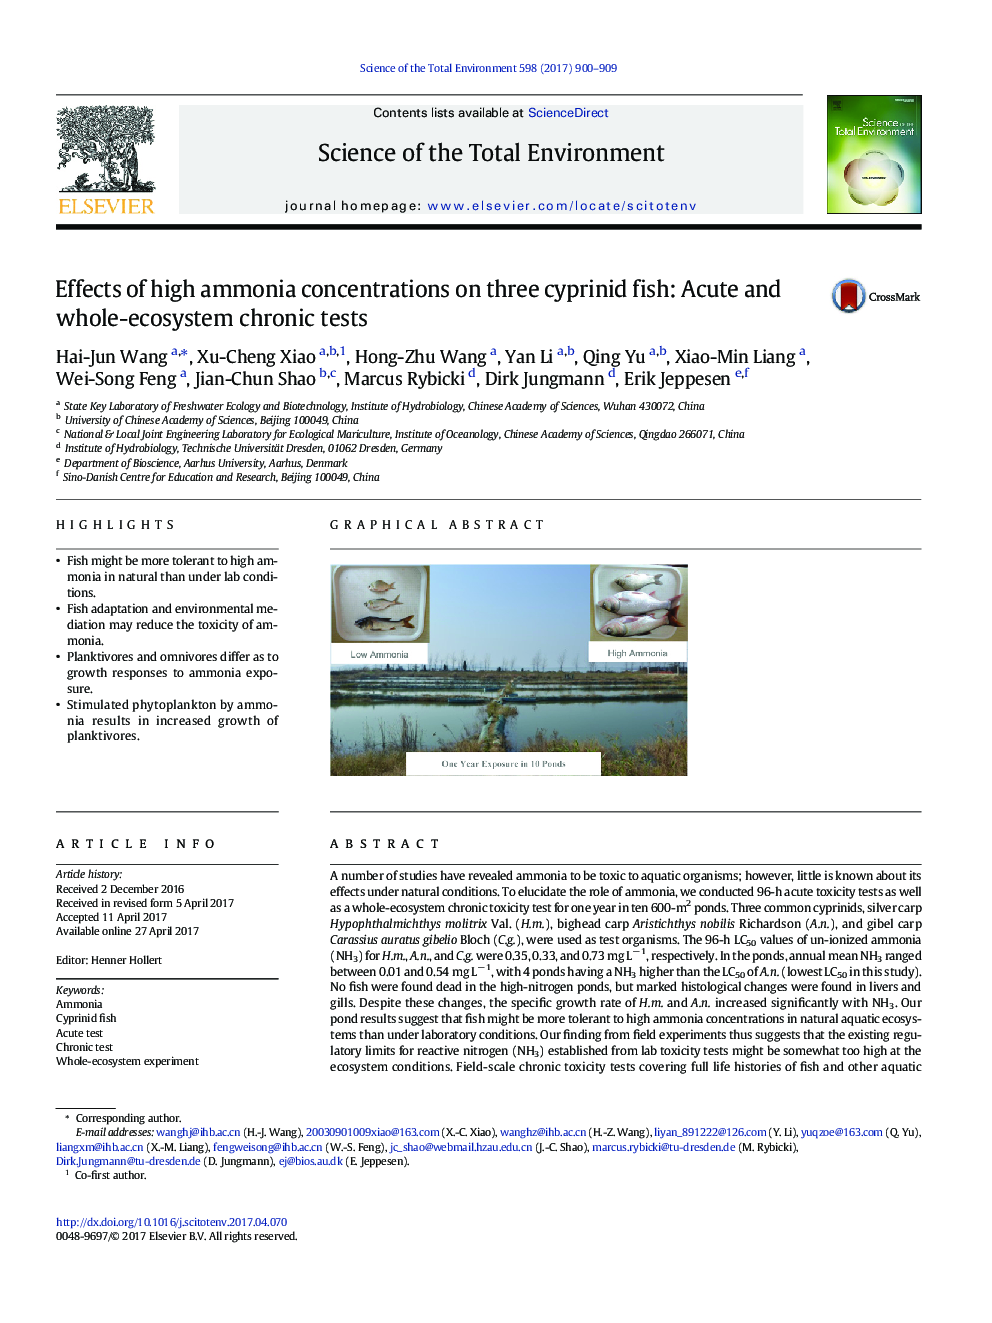 اثرات غلظت آمونیاک بالا بر روی سه ماهی سیپریید: آزمایش های مزمن حاد و کل اکوسیستم 